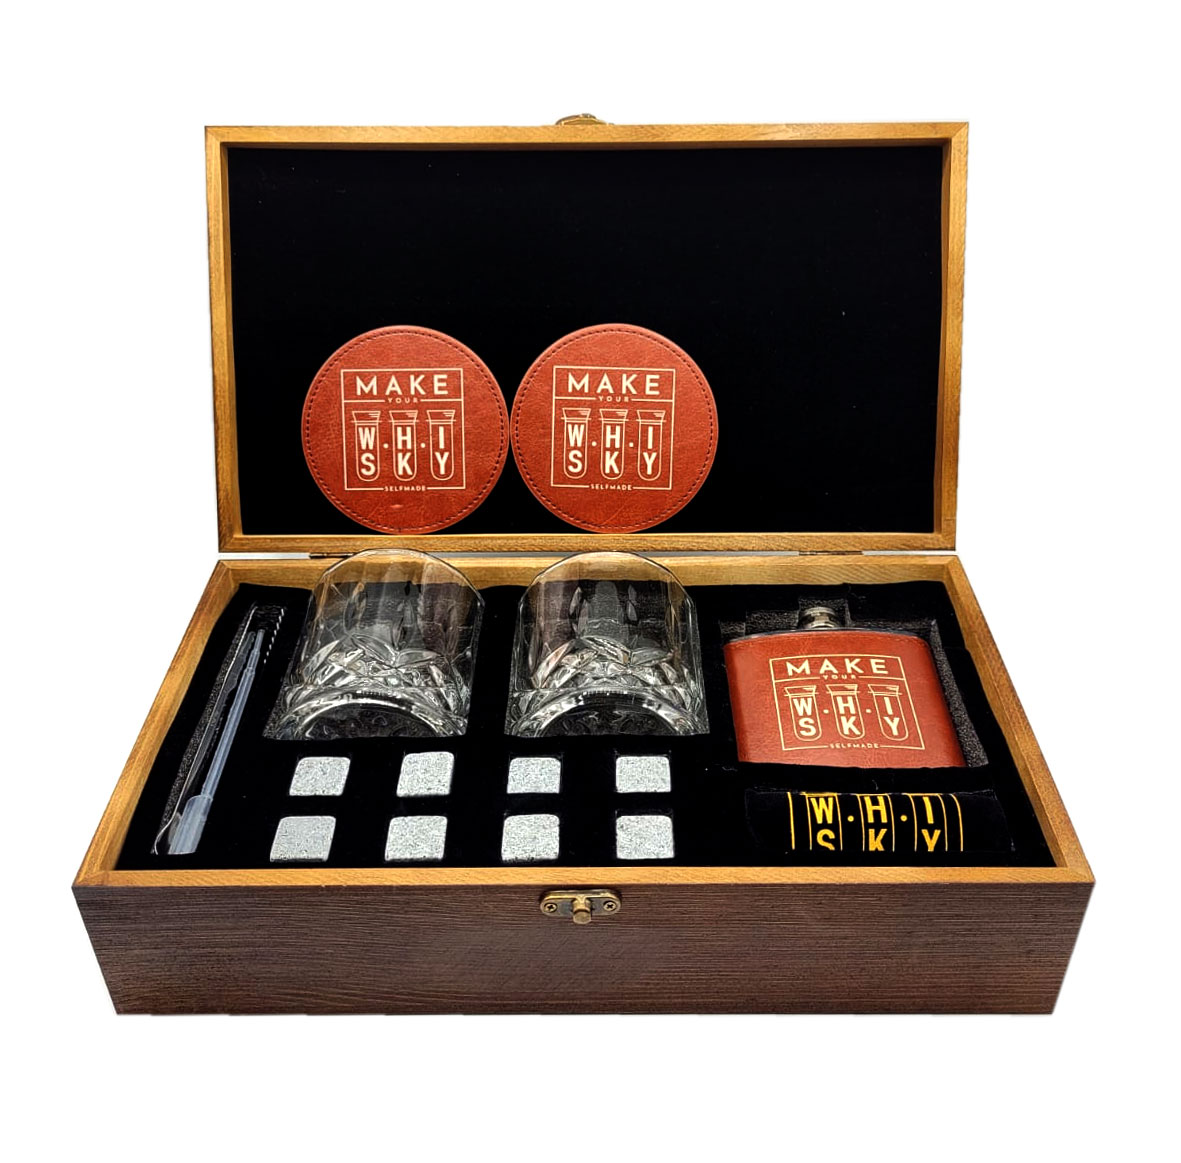 Kabumm Make Your Whisky Set - 0,7L (40% Vol) Vollmundiger Single Grain Whisky + Geschenkset in Holzbox mit 2x Tumbler + 2x Untersetzer + Flachmann + Zange + Pipette + 8x Eiswürfel Stein in Stoffbeutel- [Enthält Sulfite]